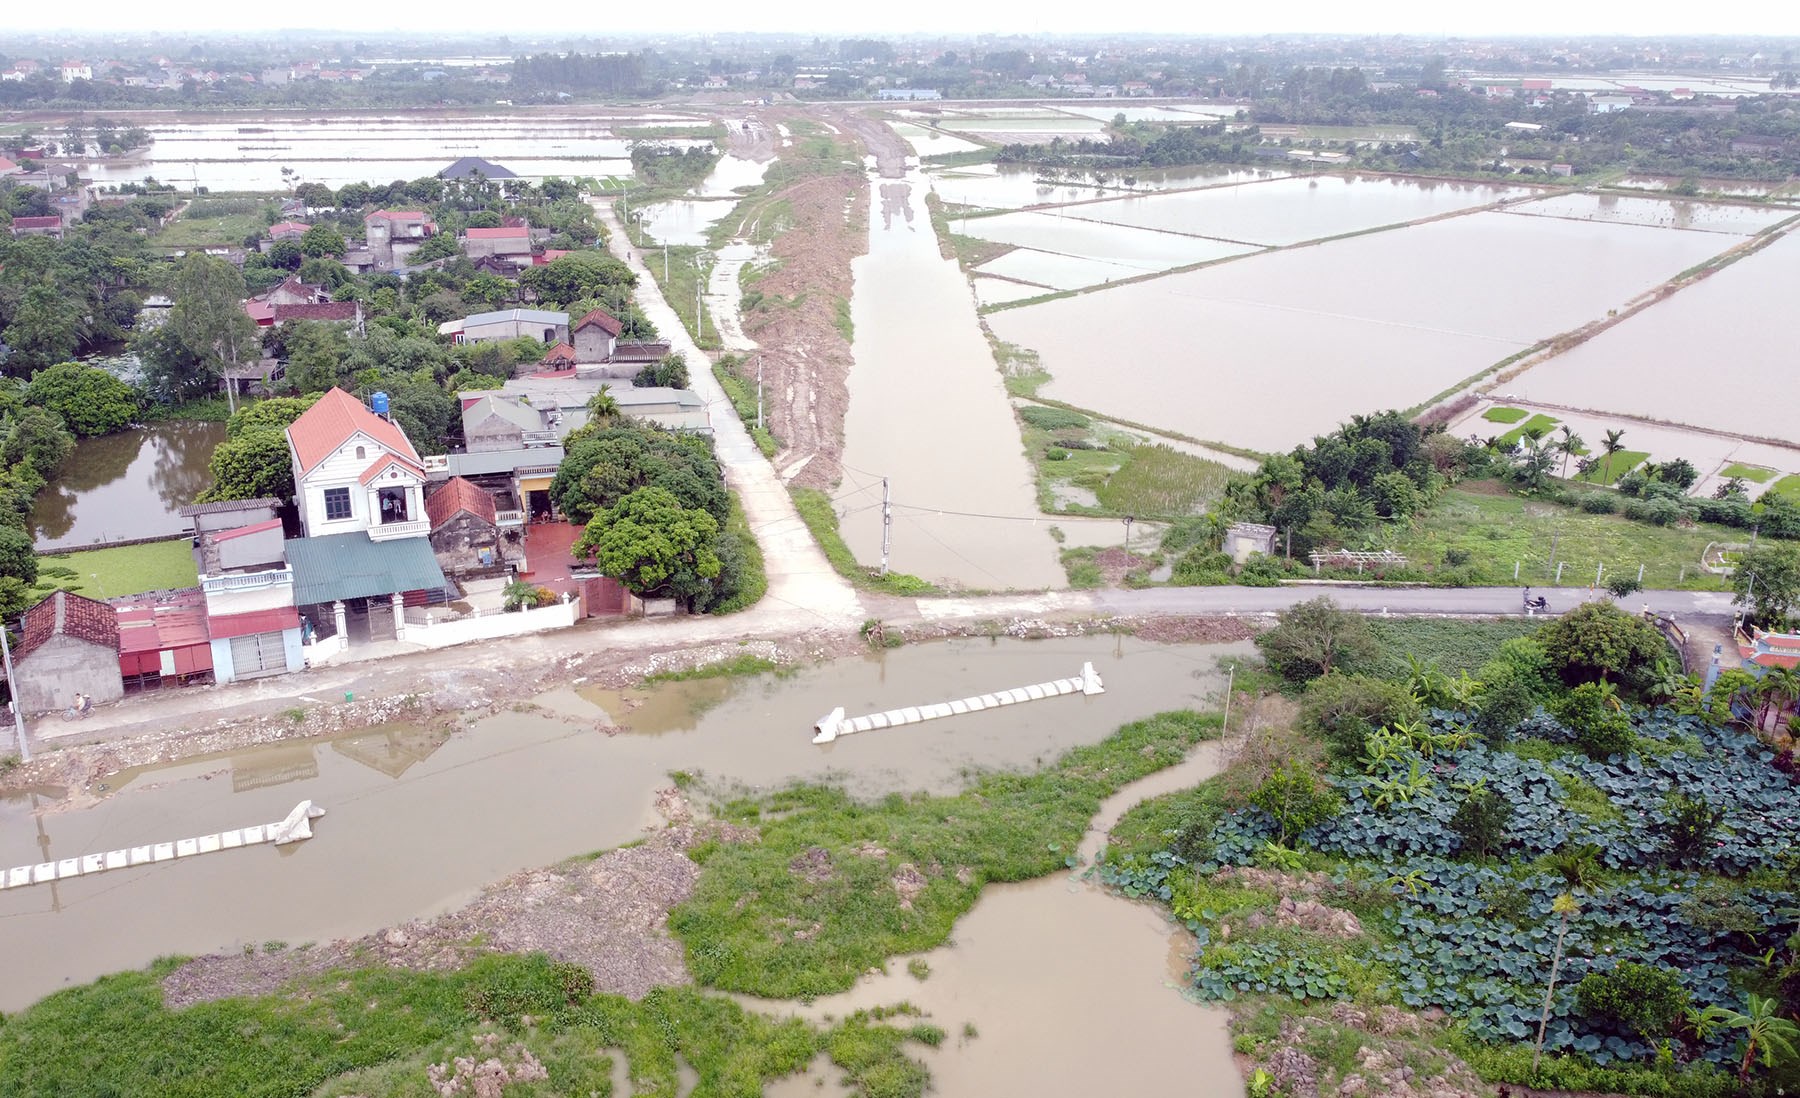 Toàn cảnh đường Tân Phúc - Võng Phan đang xây dựng qua huyện Phù Cừ, Hưng Yên